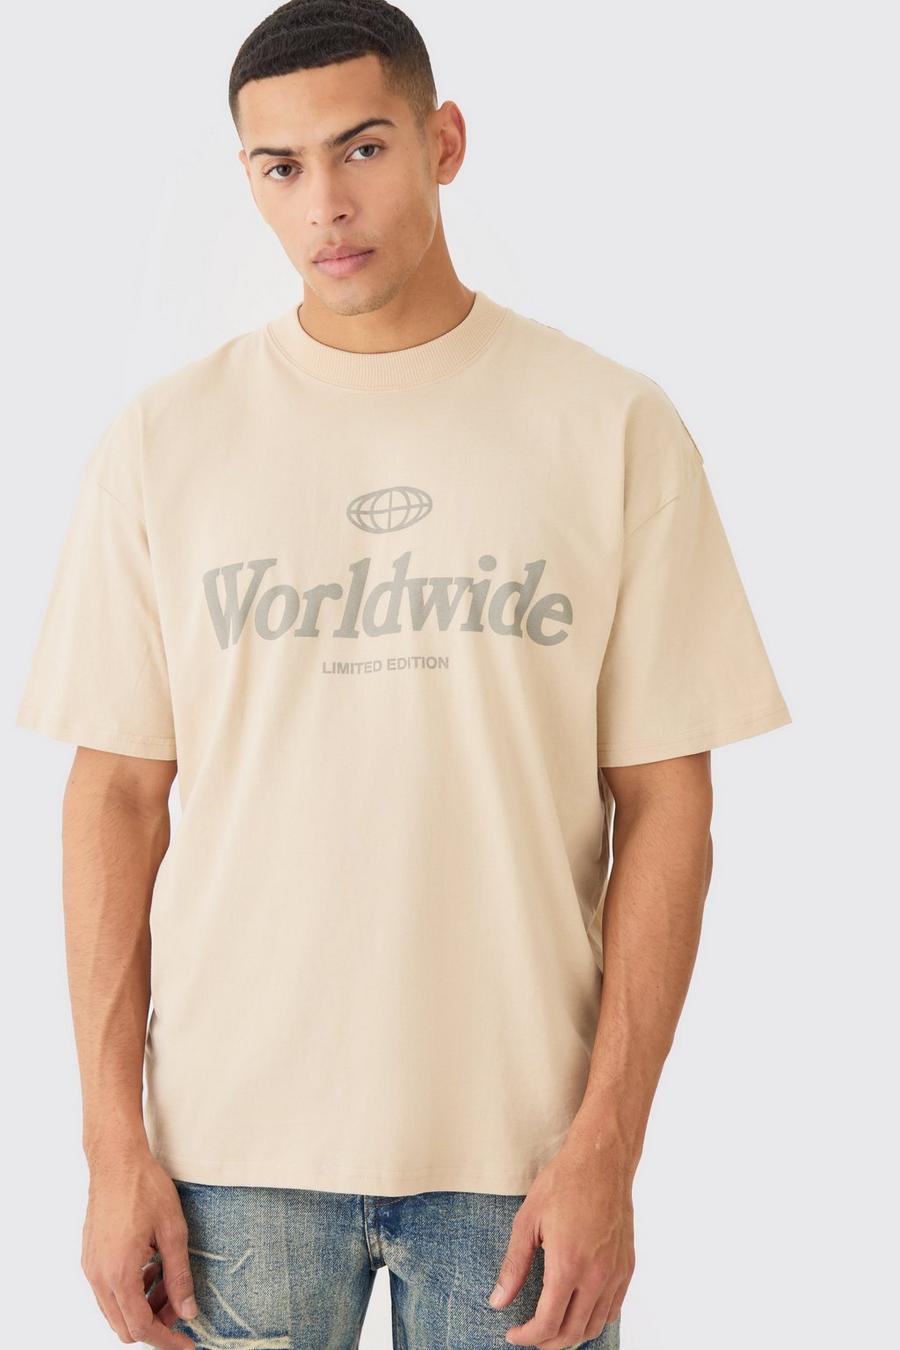 T-shirt oversize à slogan Worldwide, Sand